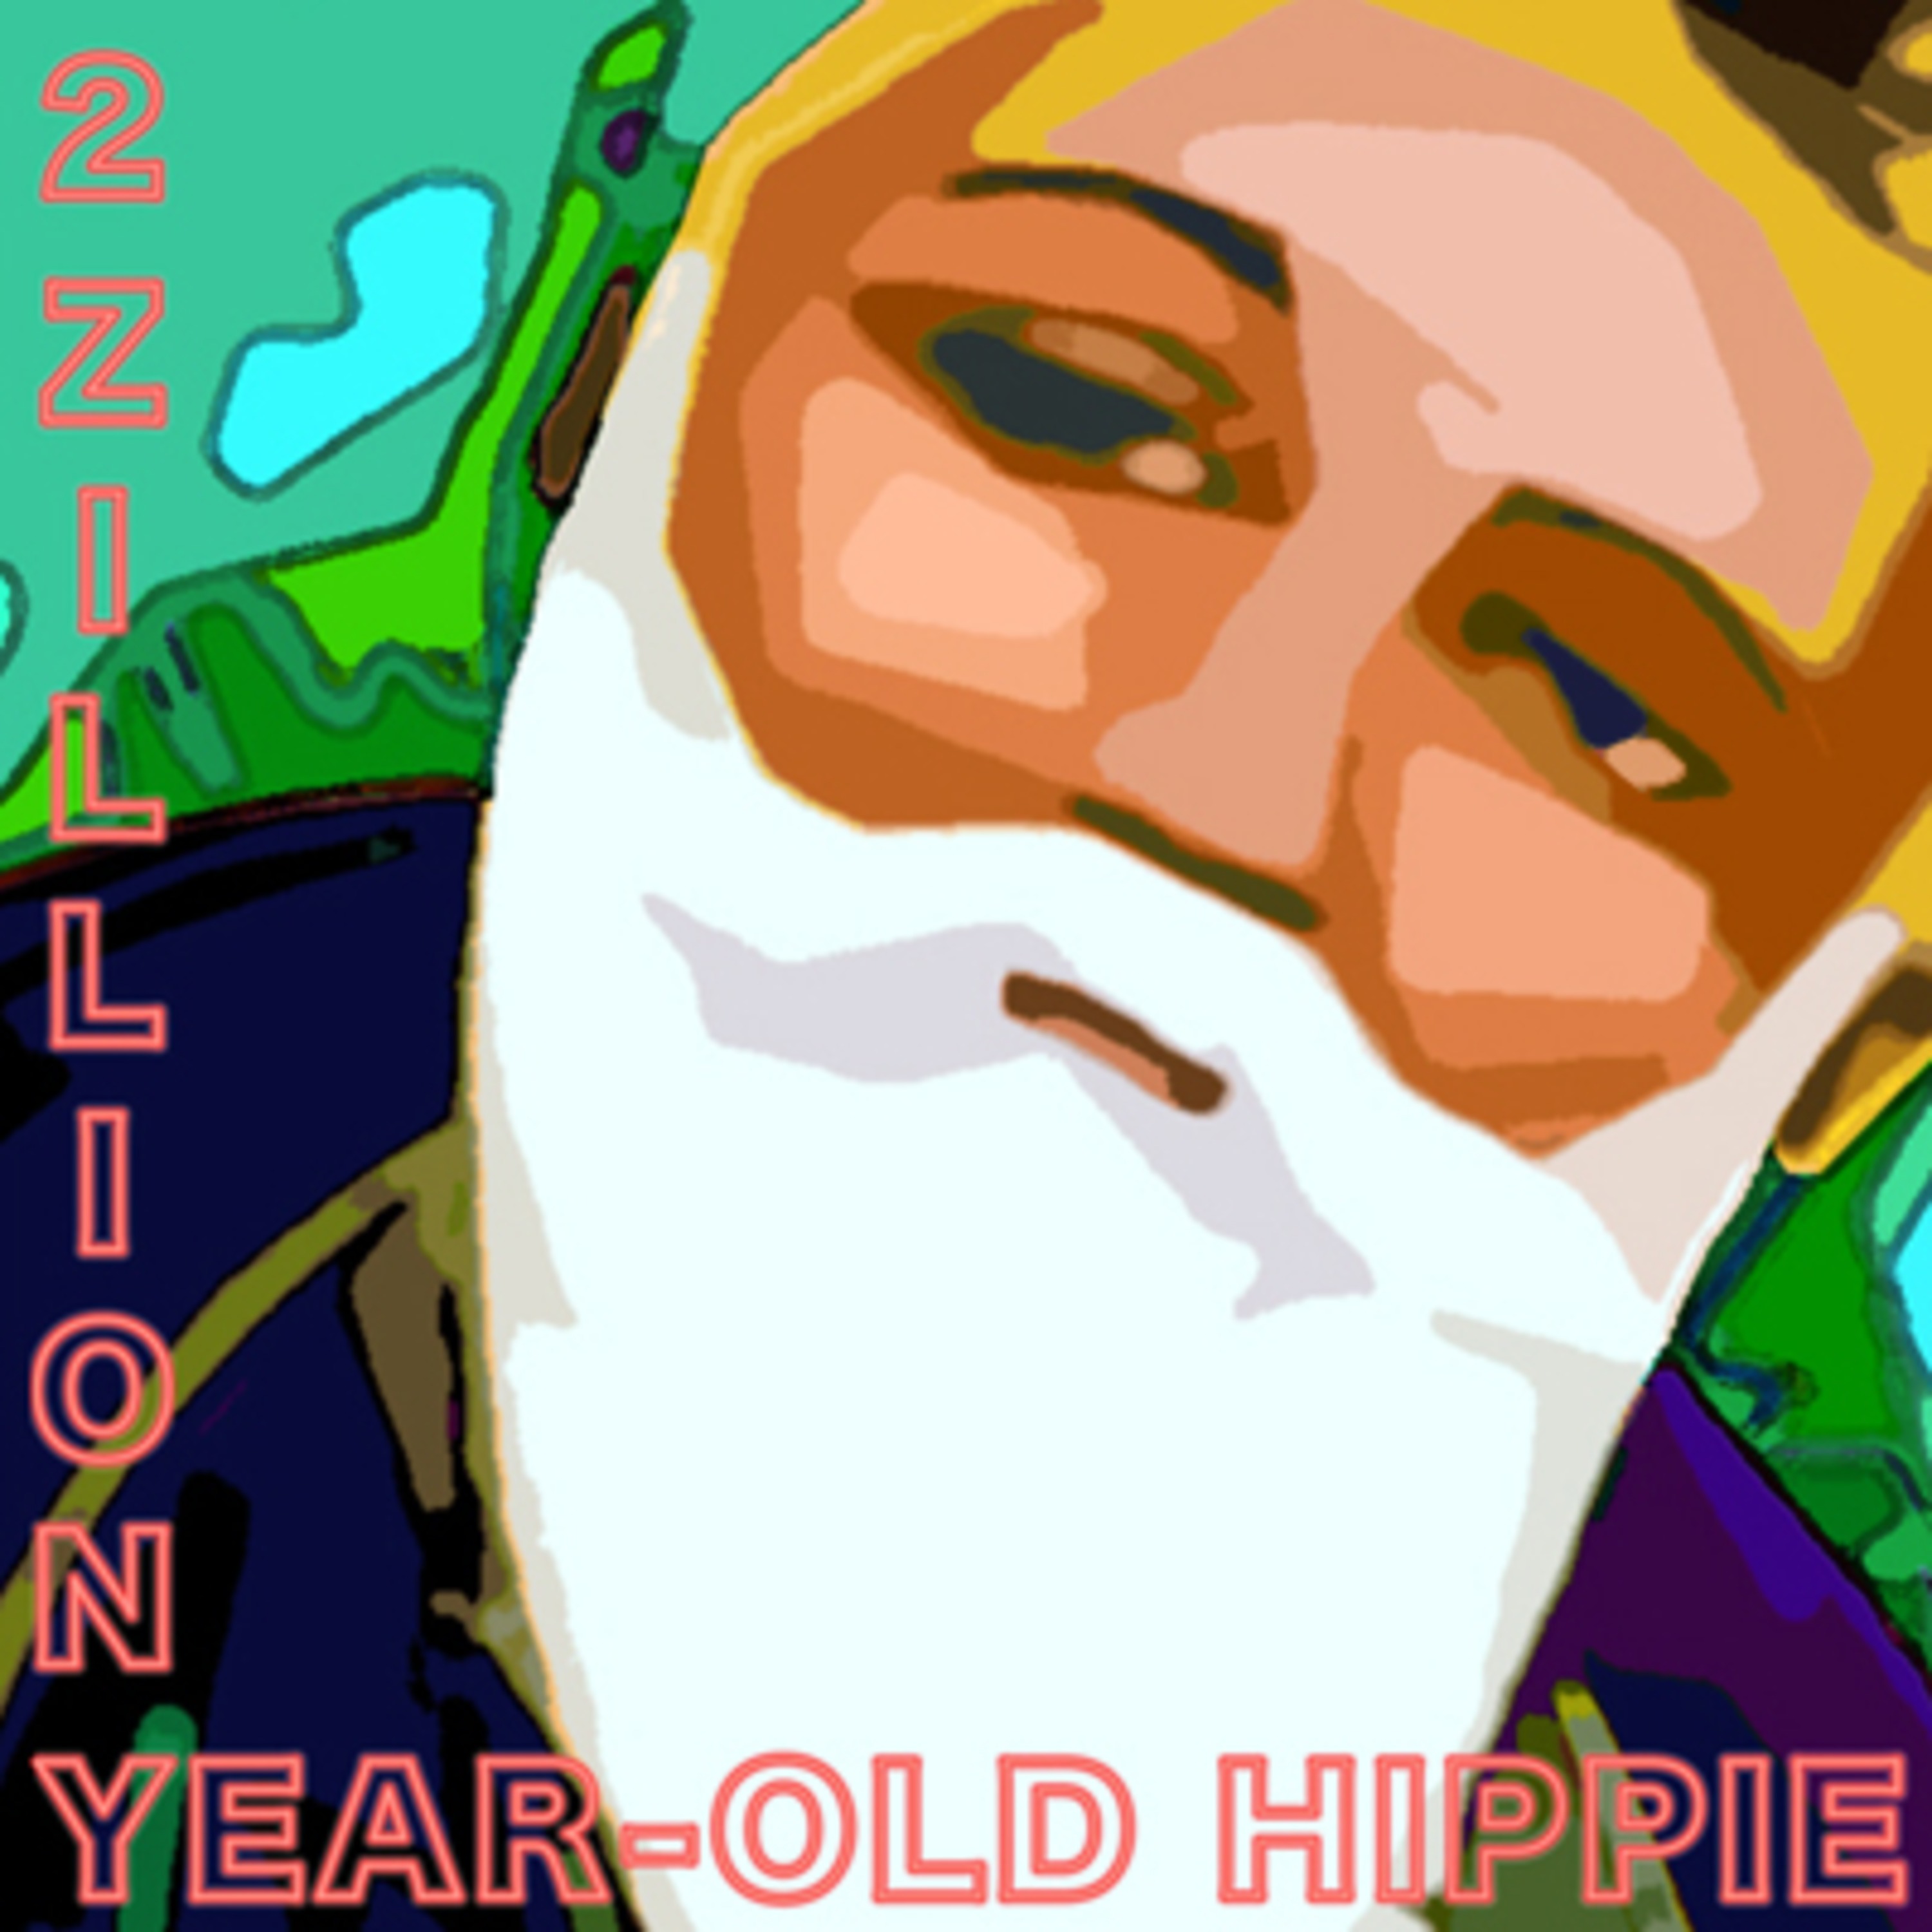 2 Zillion-Year-Old Hippie